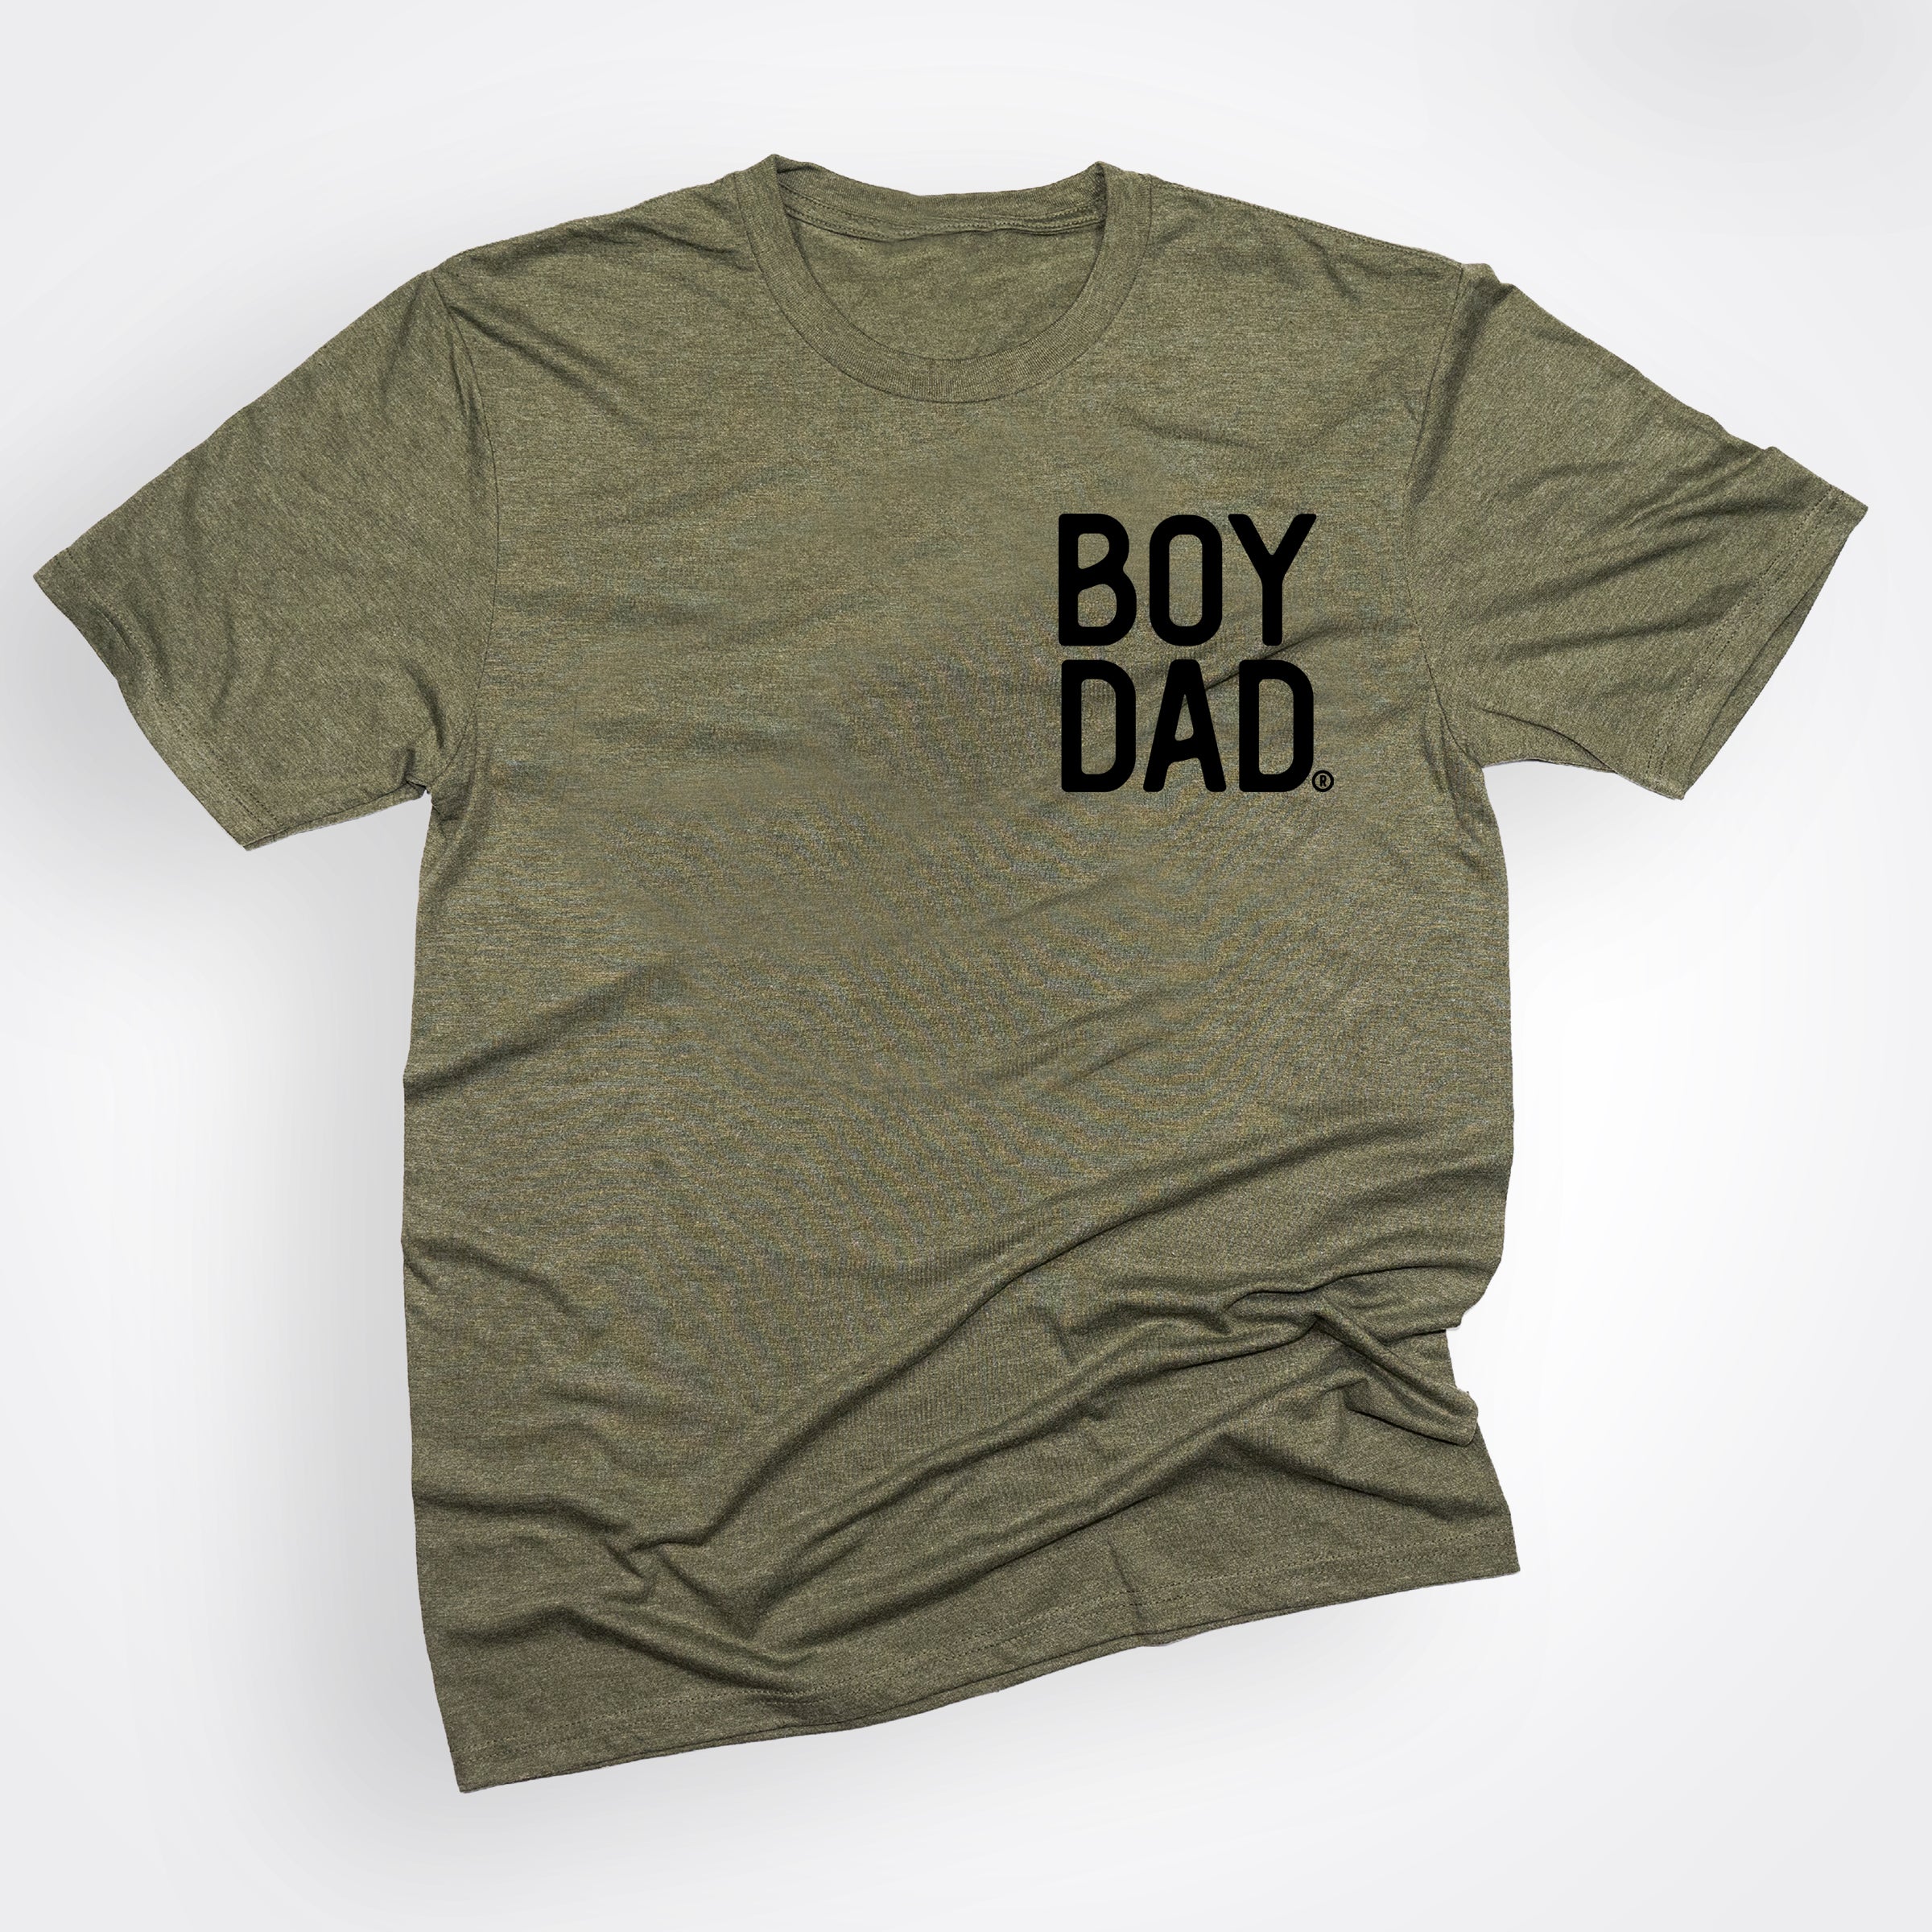 Boydad® Military Green Shirt